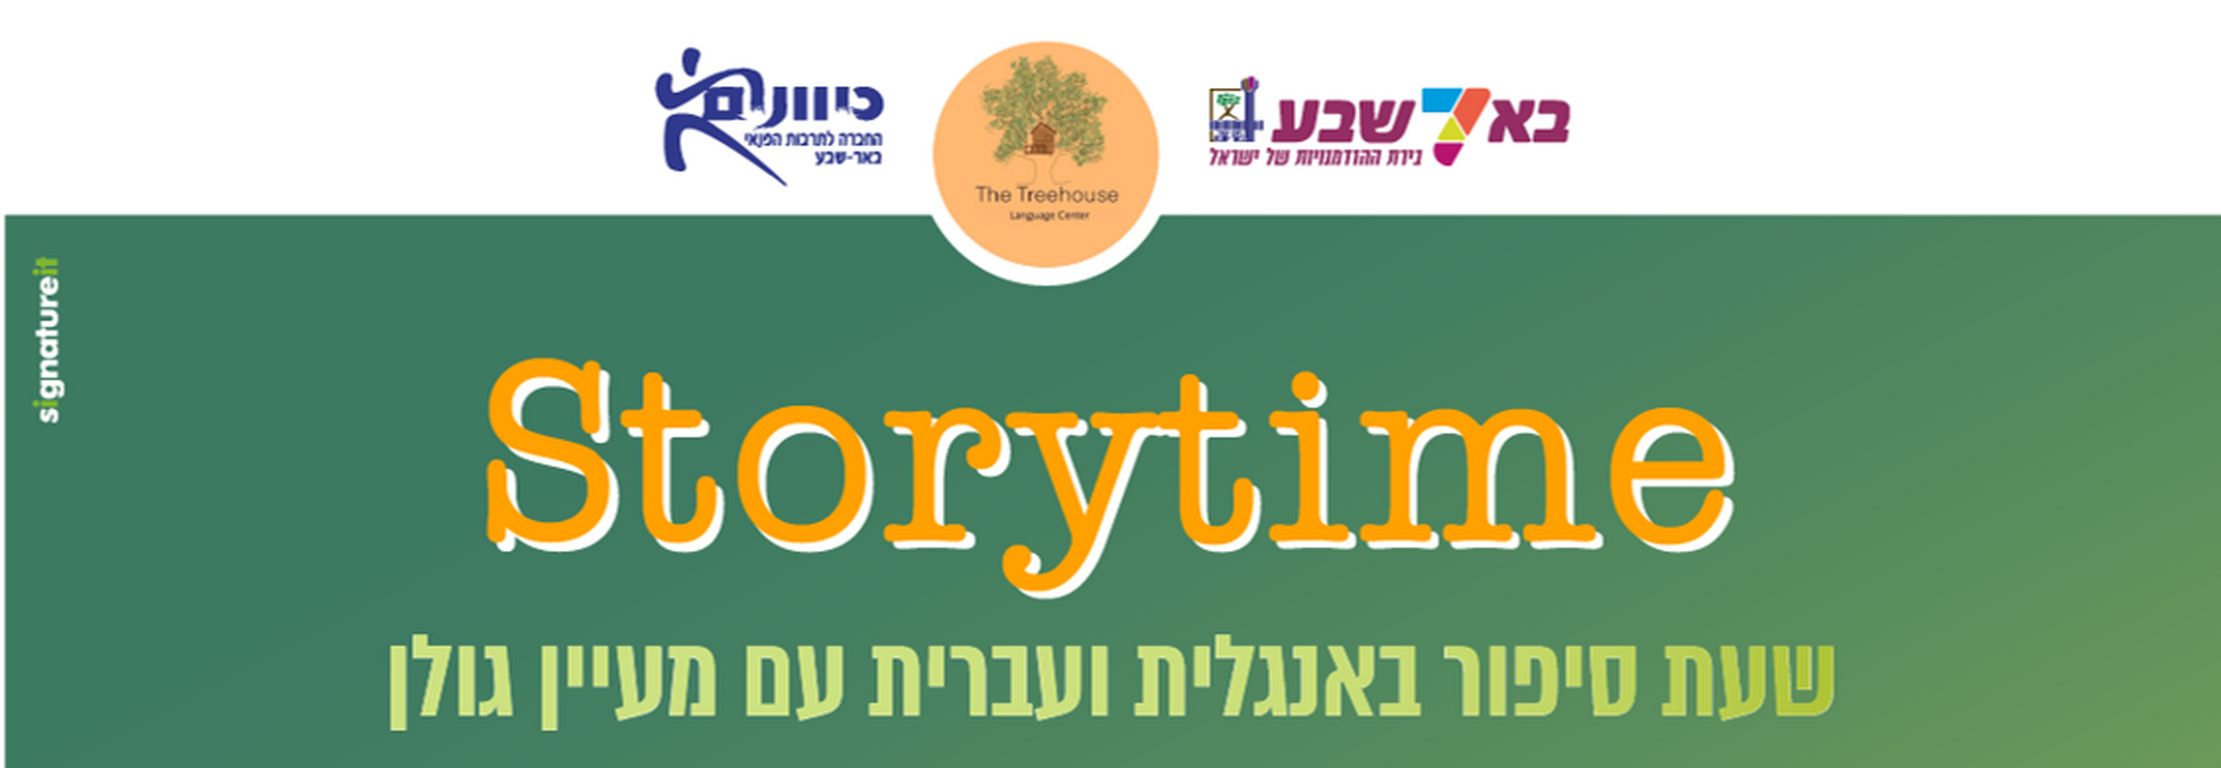 תמונת מופע: Storytime - שעת סיפור באנגלית ועברית